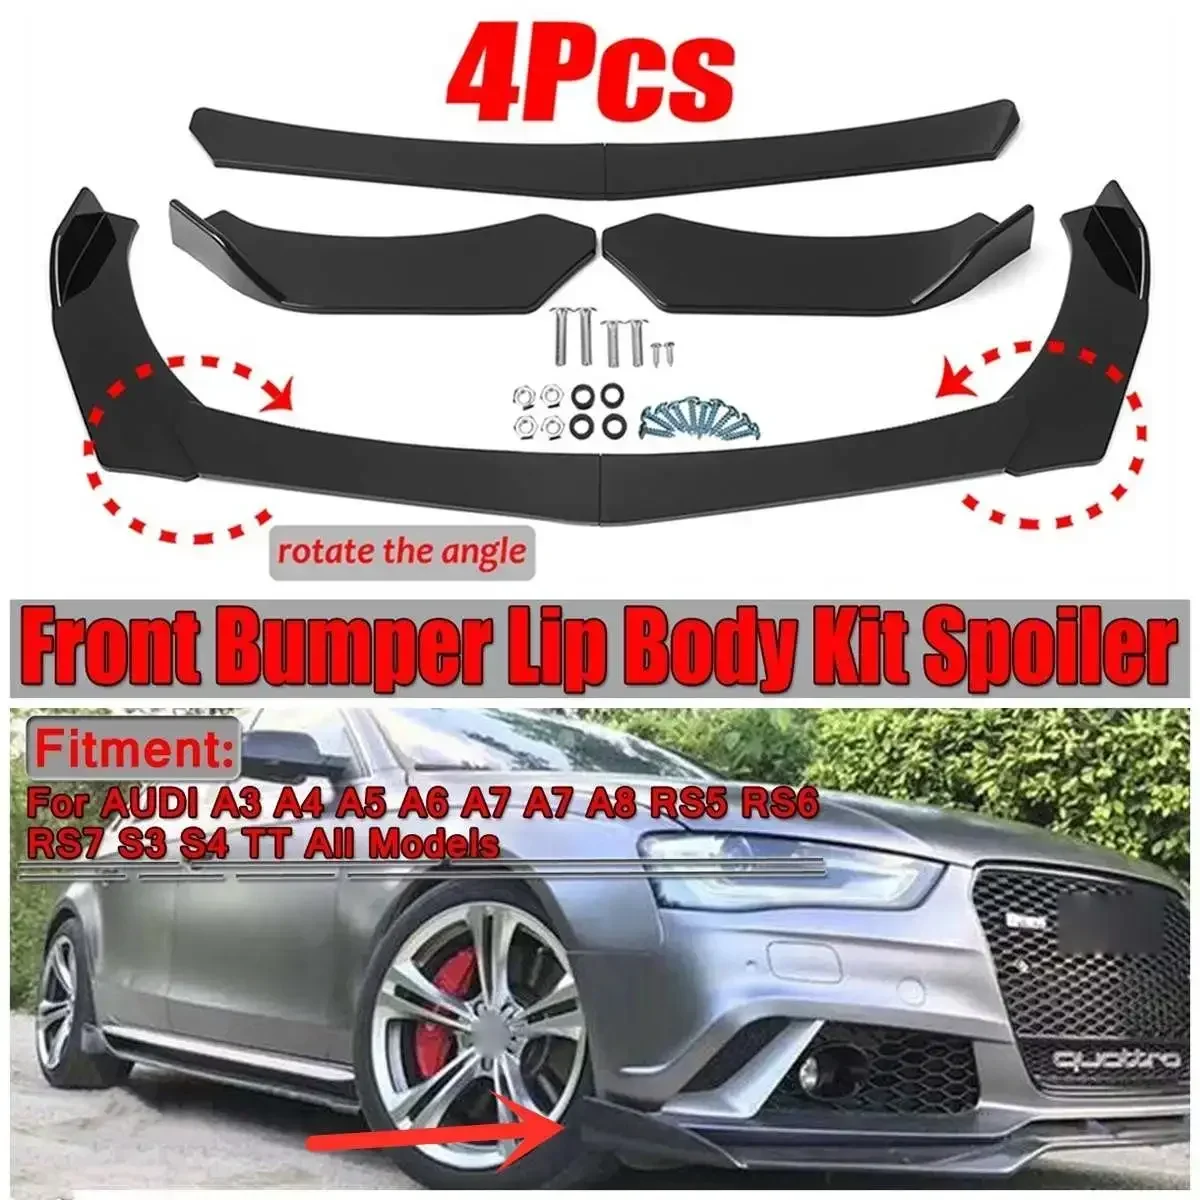 

4pcs Car Front Bumper Splitter Lip Body Kit Spoiler Protector Cover Lip For AUDI A3 A4 A5 A6 A7 A7 A8 Q3 Q5 Q7 RS5 RS6